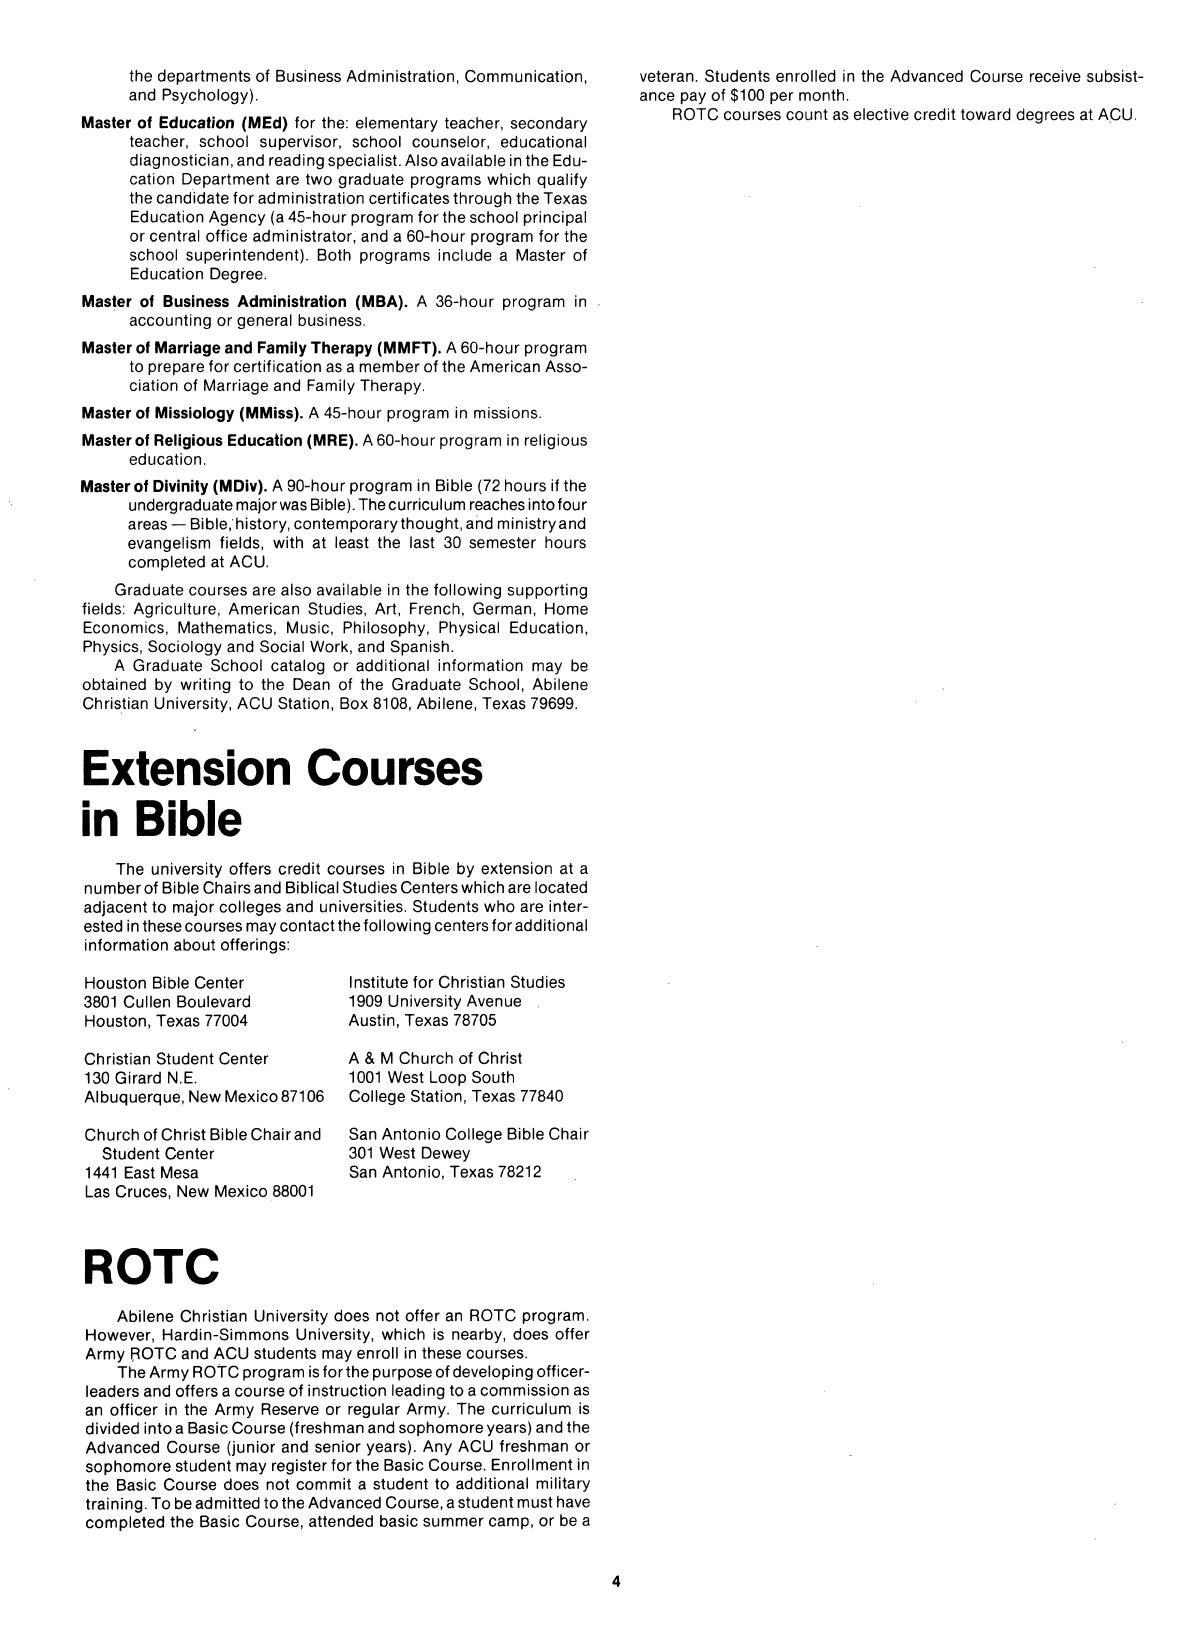 Catalog of Abilene Christian University, 1982-1983
                                                
                                                    4
                                                